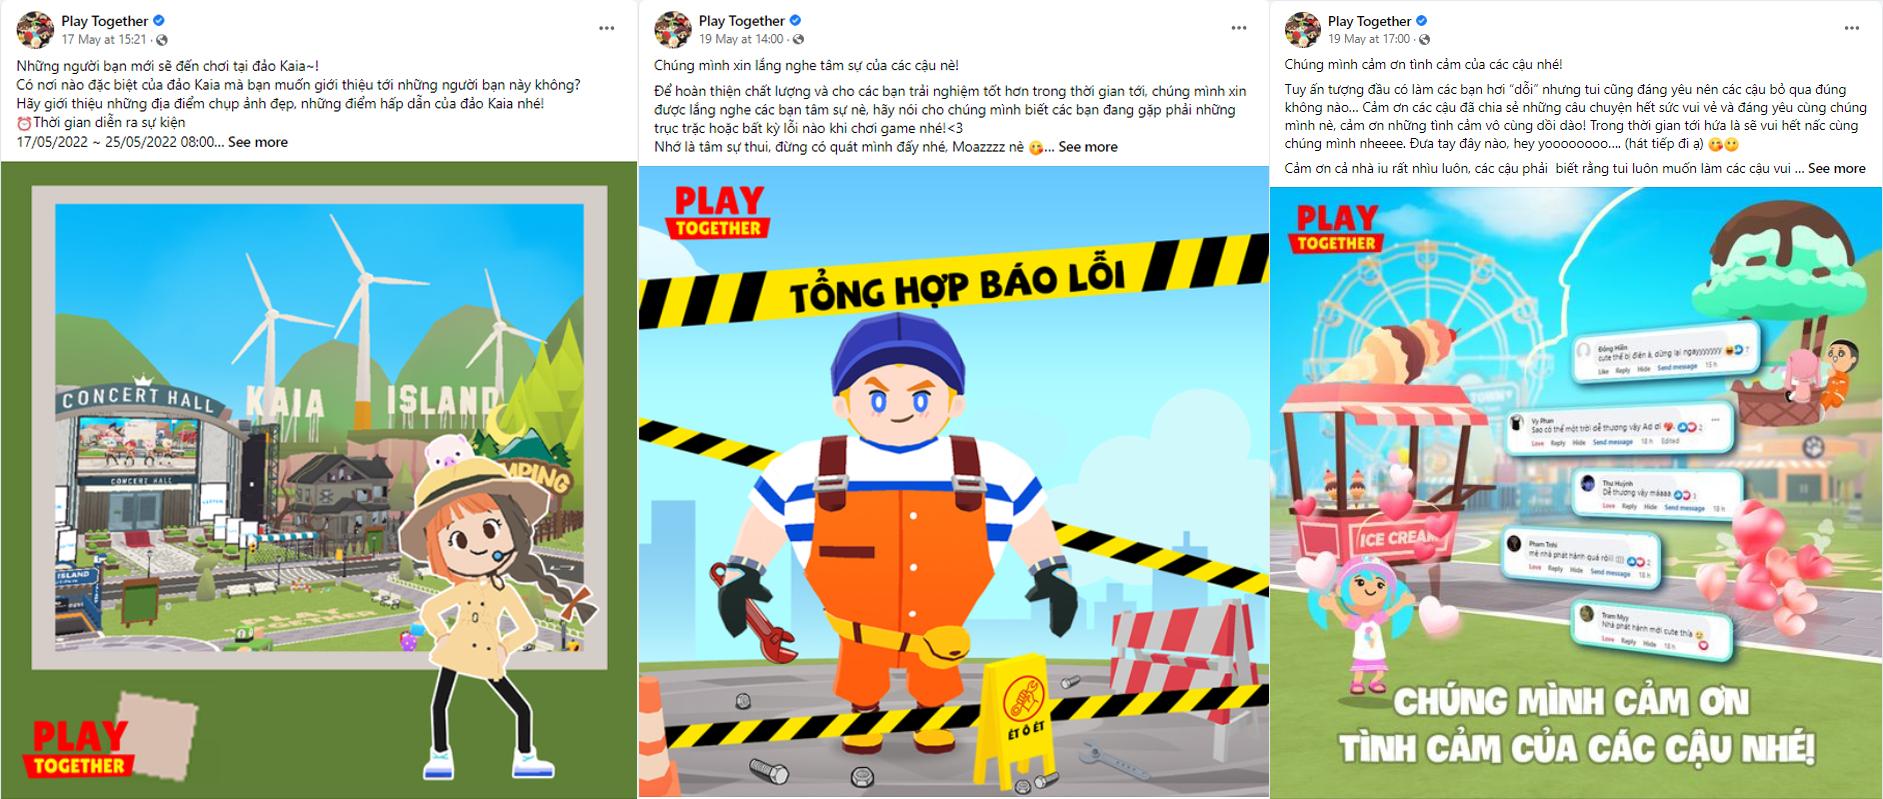 Play Together VNG chuẩn bị được phát hành tại Việt Nam